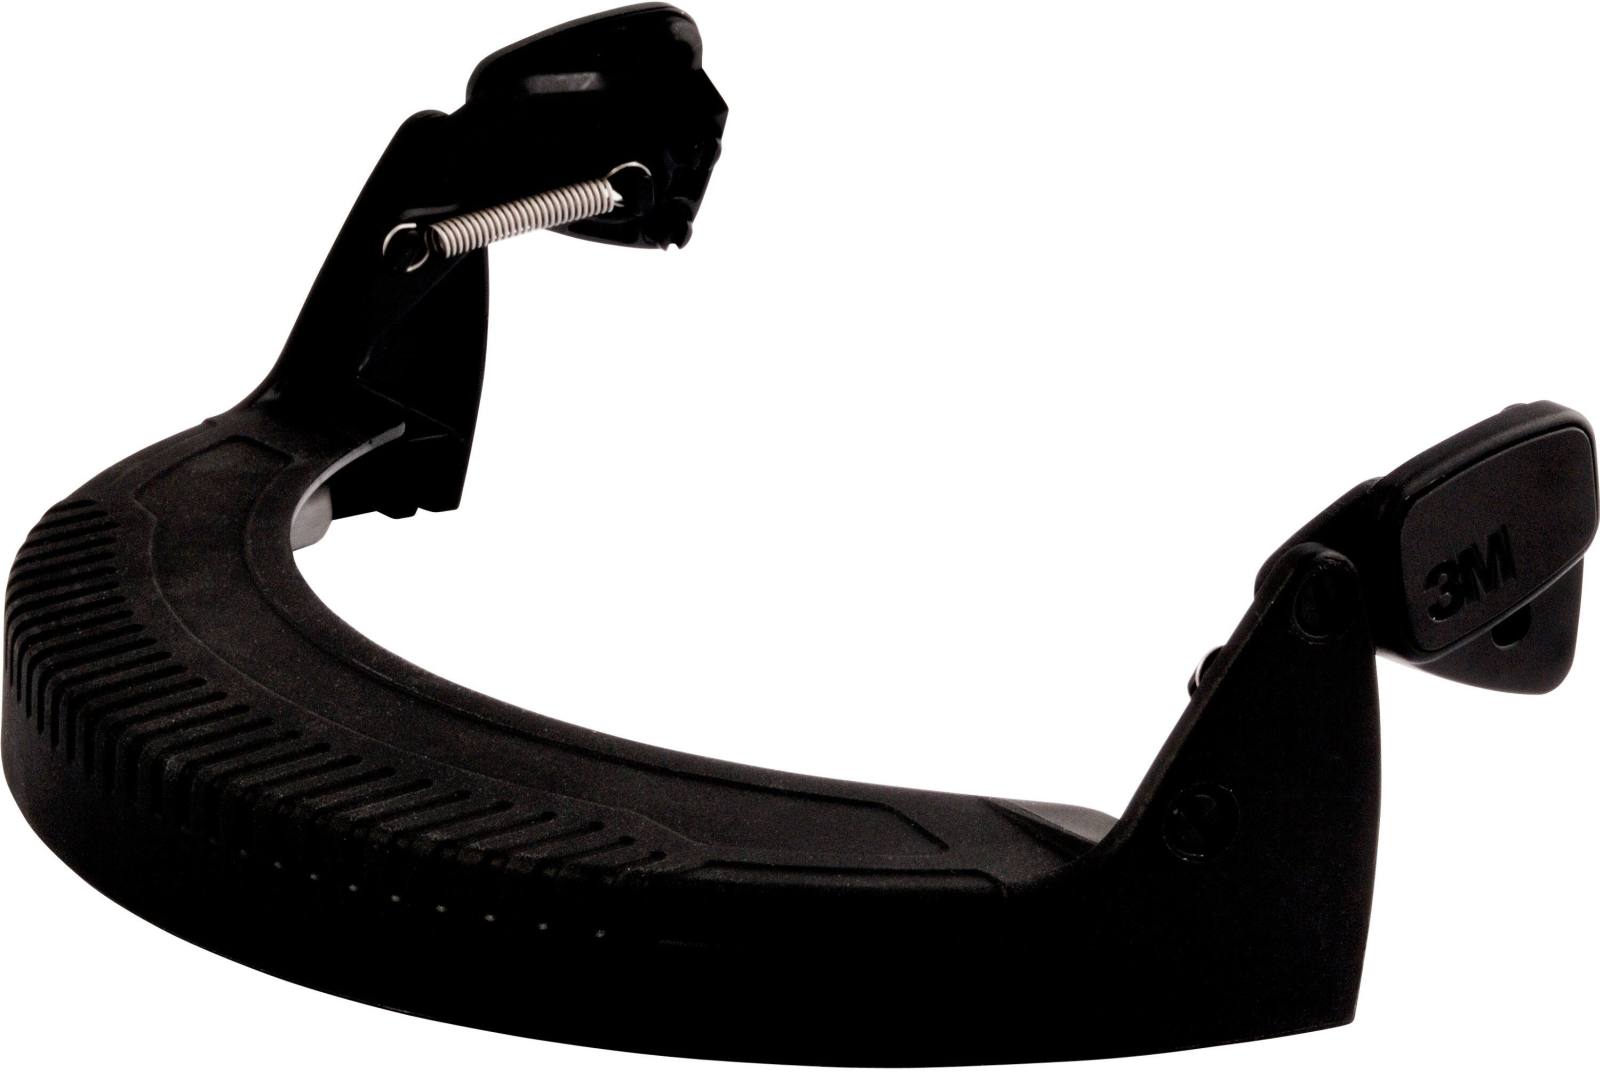 Soporte de visera 3M V5 soporte para casco de seguridad G22 y G3000 para fijar viseras 5* al casco de seguridad / 3M soporte de visera para cascos de seguridad 3M™, FH1